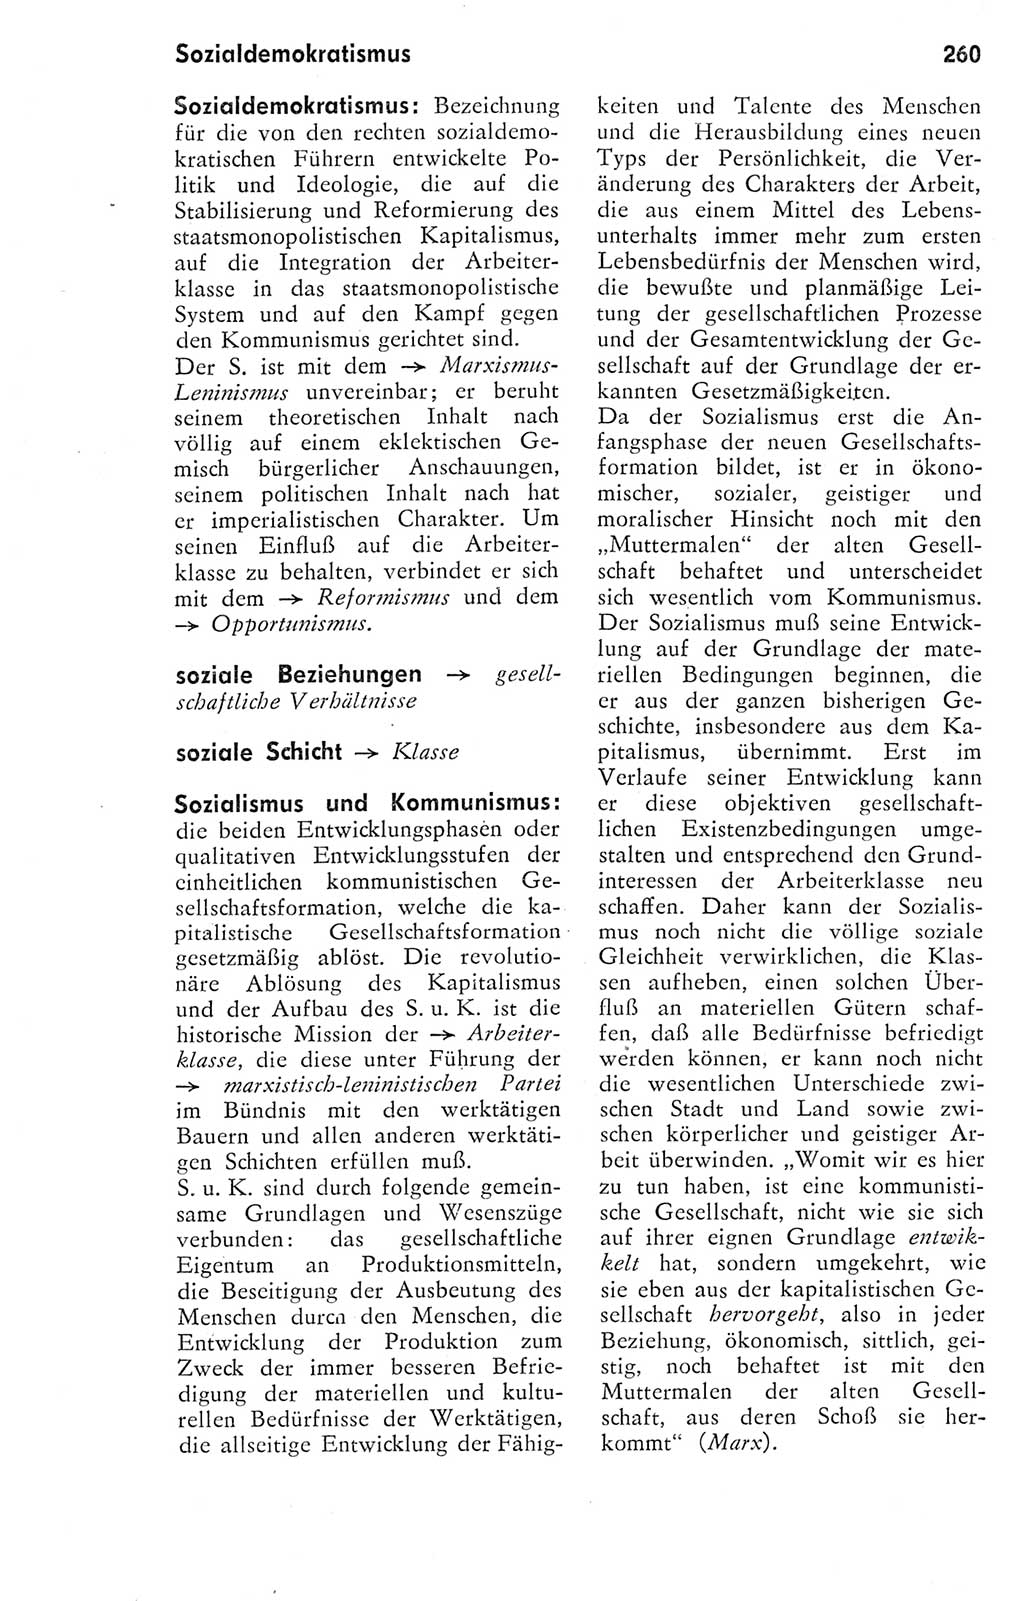 Kleines Wörterbuch der marxistisch-leninistischen Philosophie [Deutsche Demokratische Republik (DDR)] 1974, Seite 260 (Kl. Wb. ML Phil. DDR 1974, S. 260)